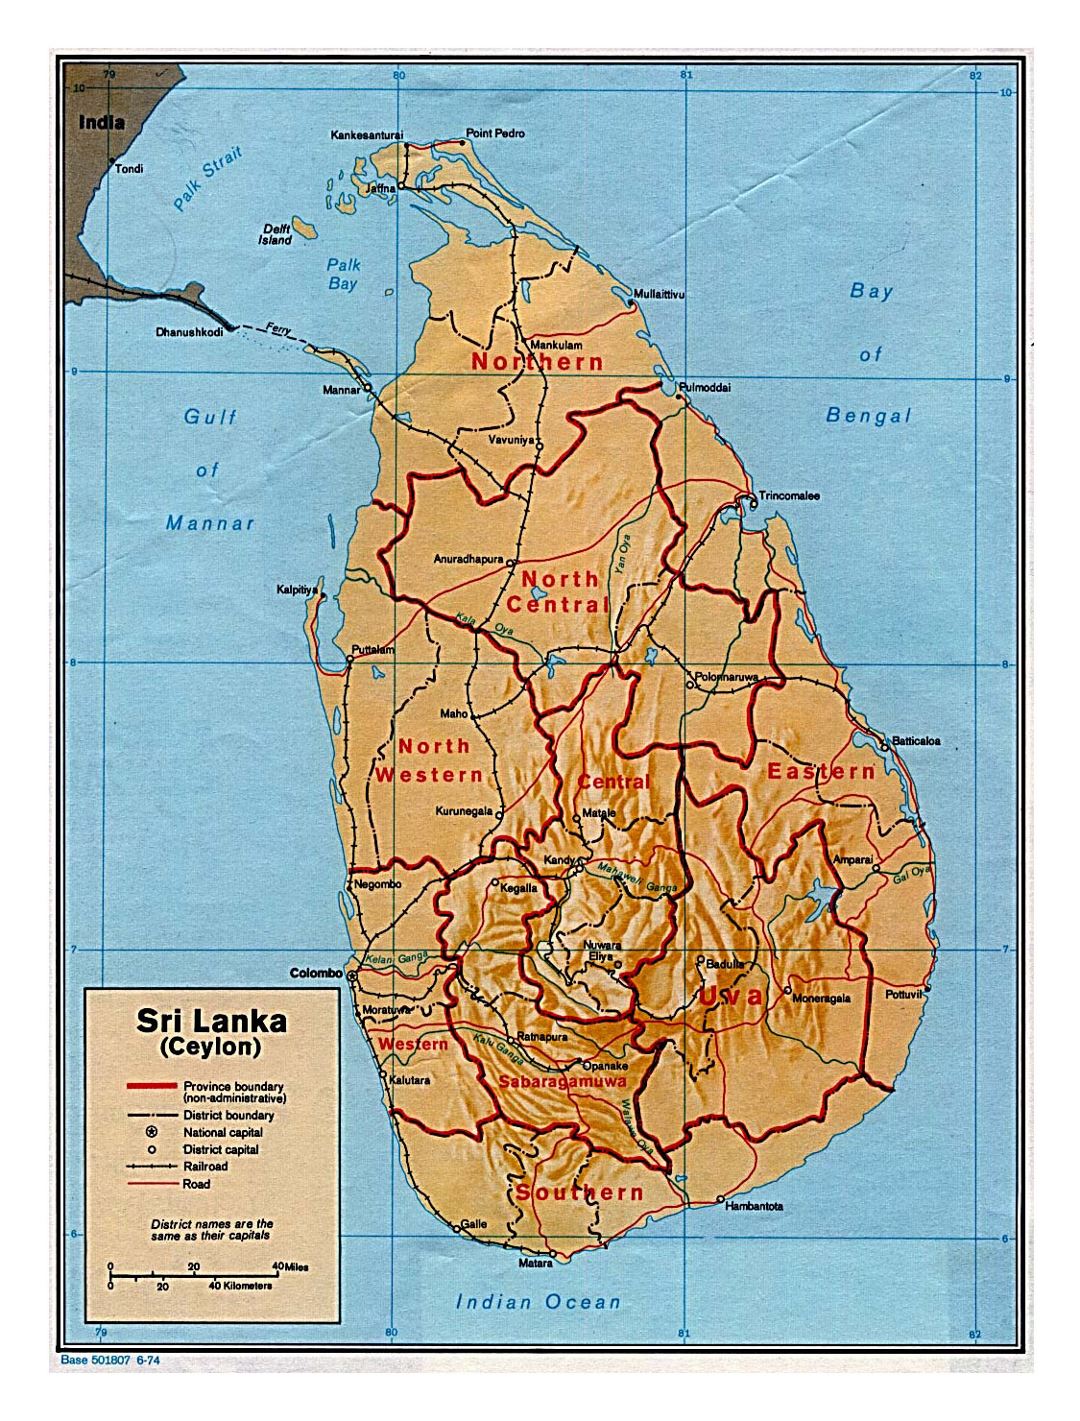 Detallado mapa político y administrativo de Sri Lanka con socorro, carreteras, ferrocarriles y principales ciudades - 1974